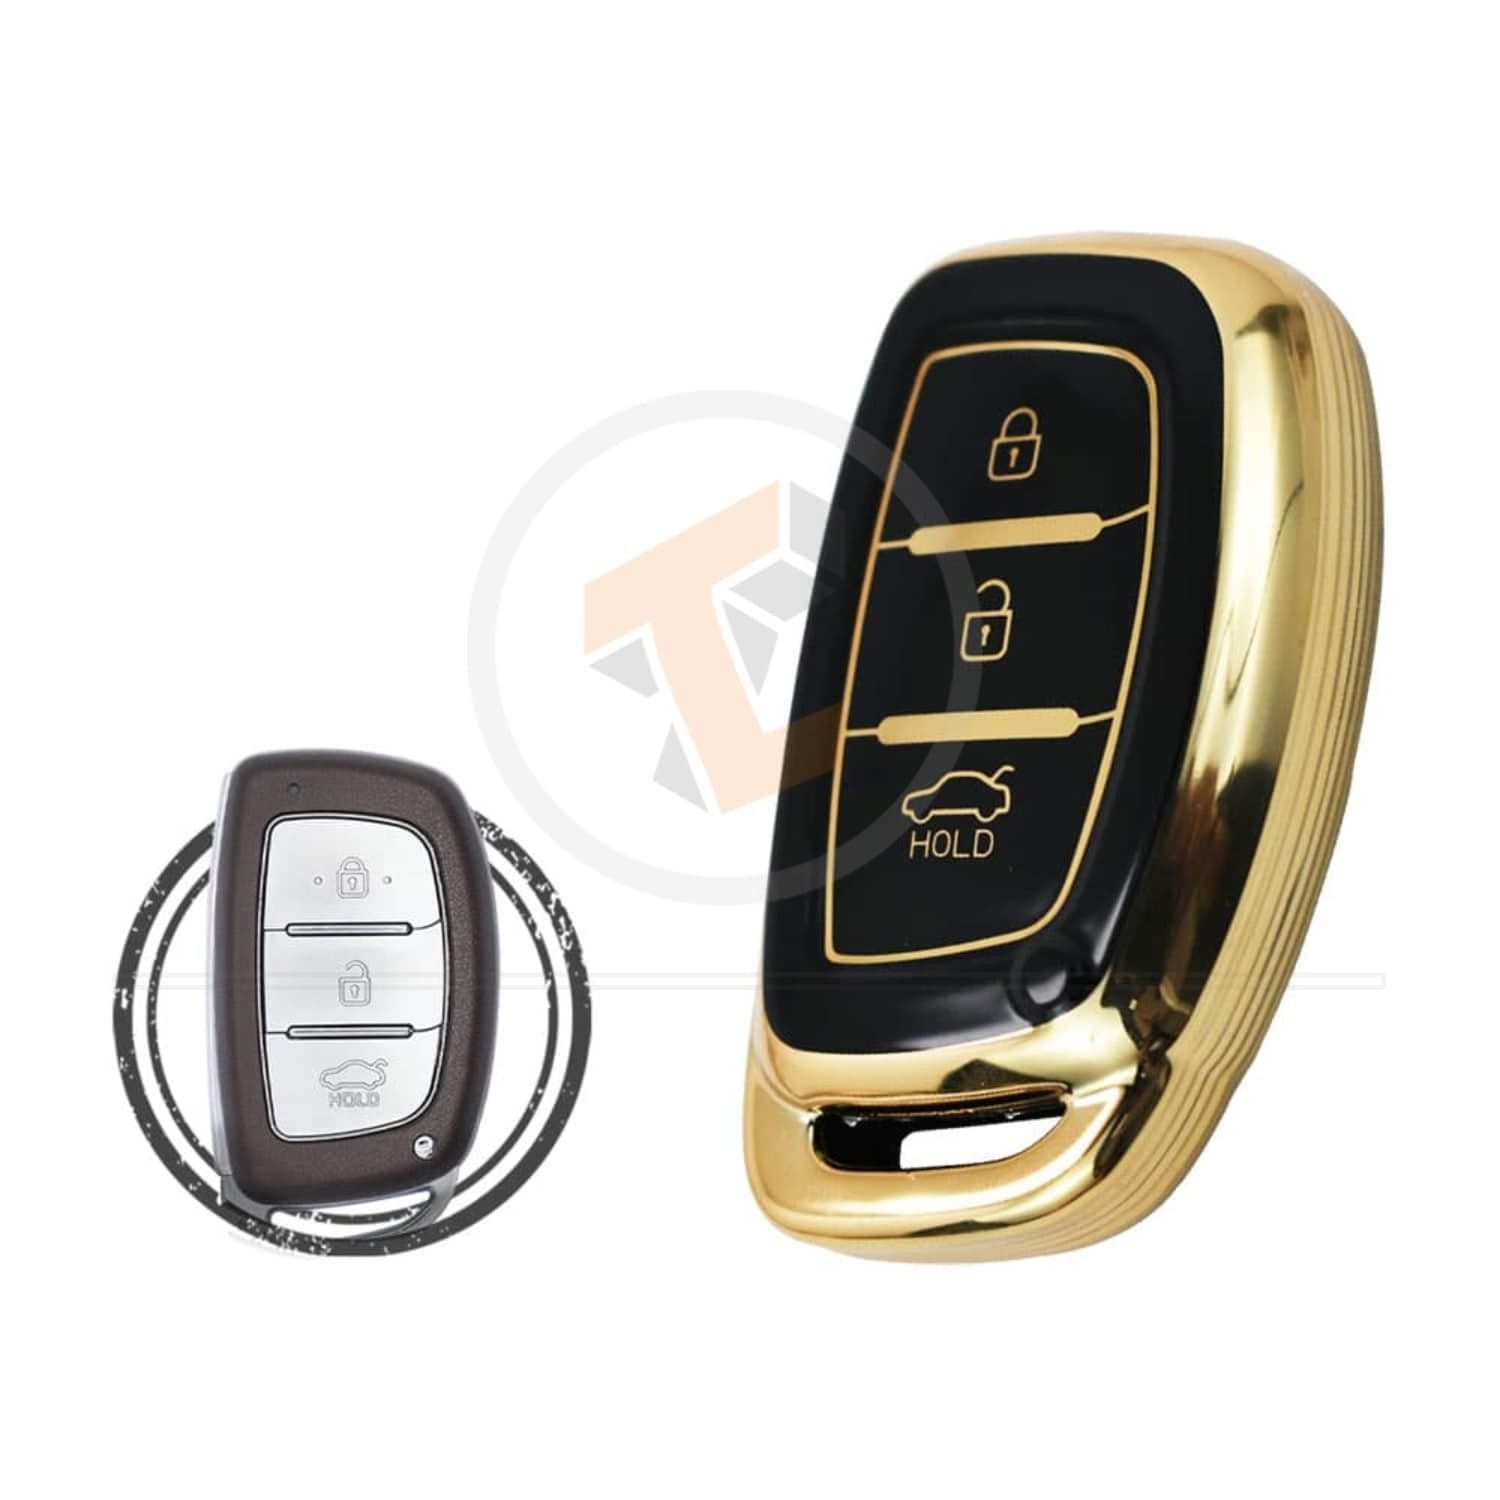 Remote Key Cover TPU Key Cover Case Protector For Hyundai Elantra